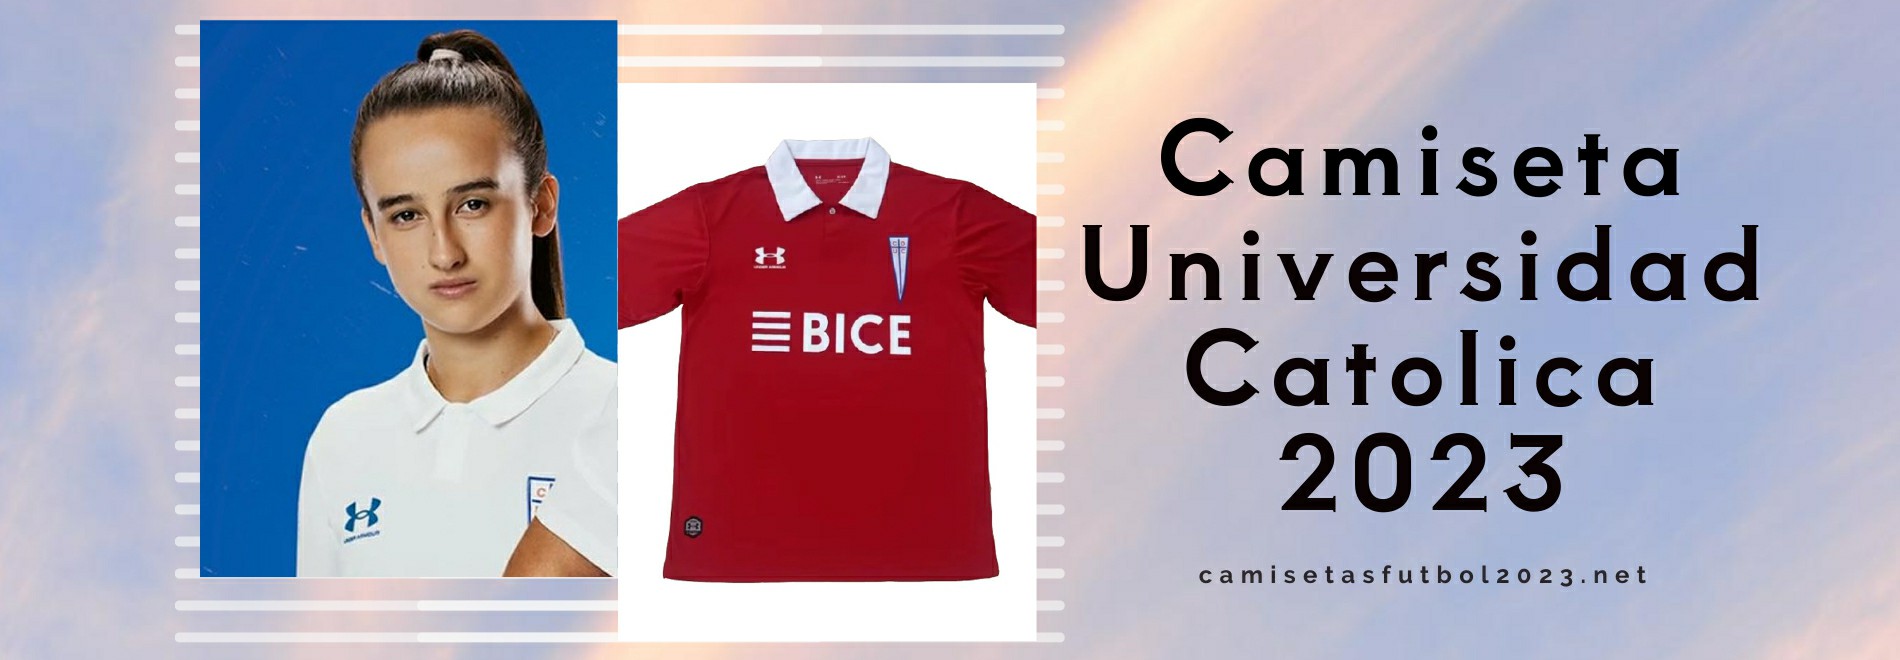 Camiseta Universidad Catolica 2023-2024